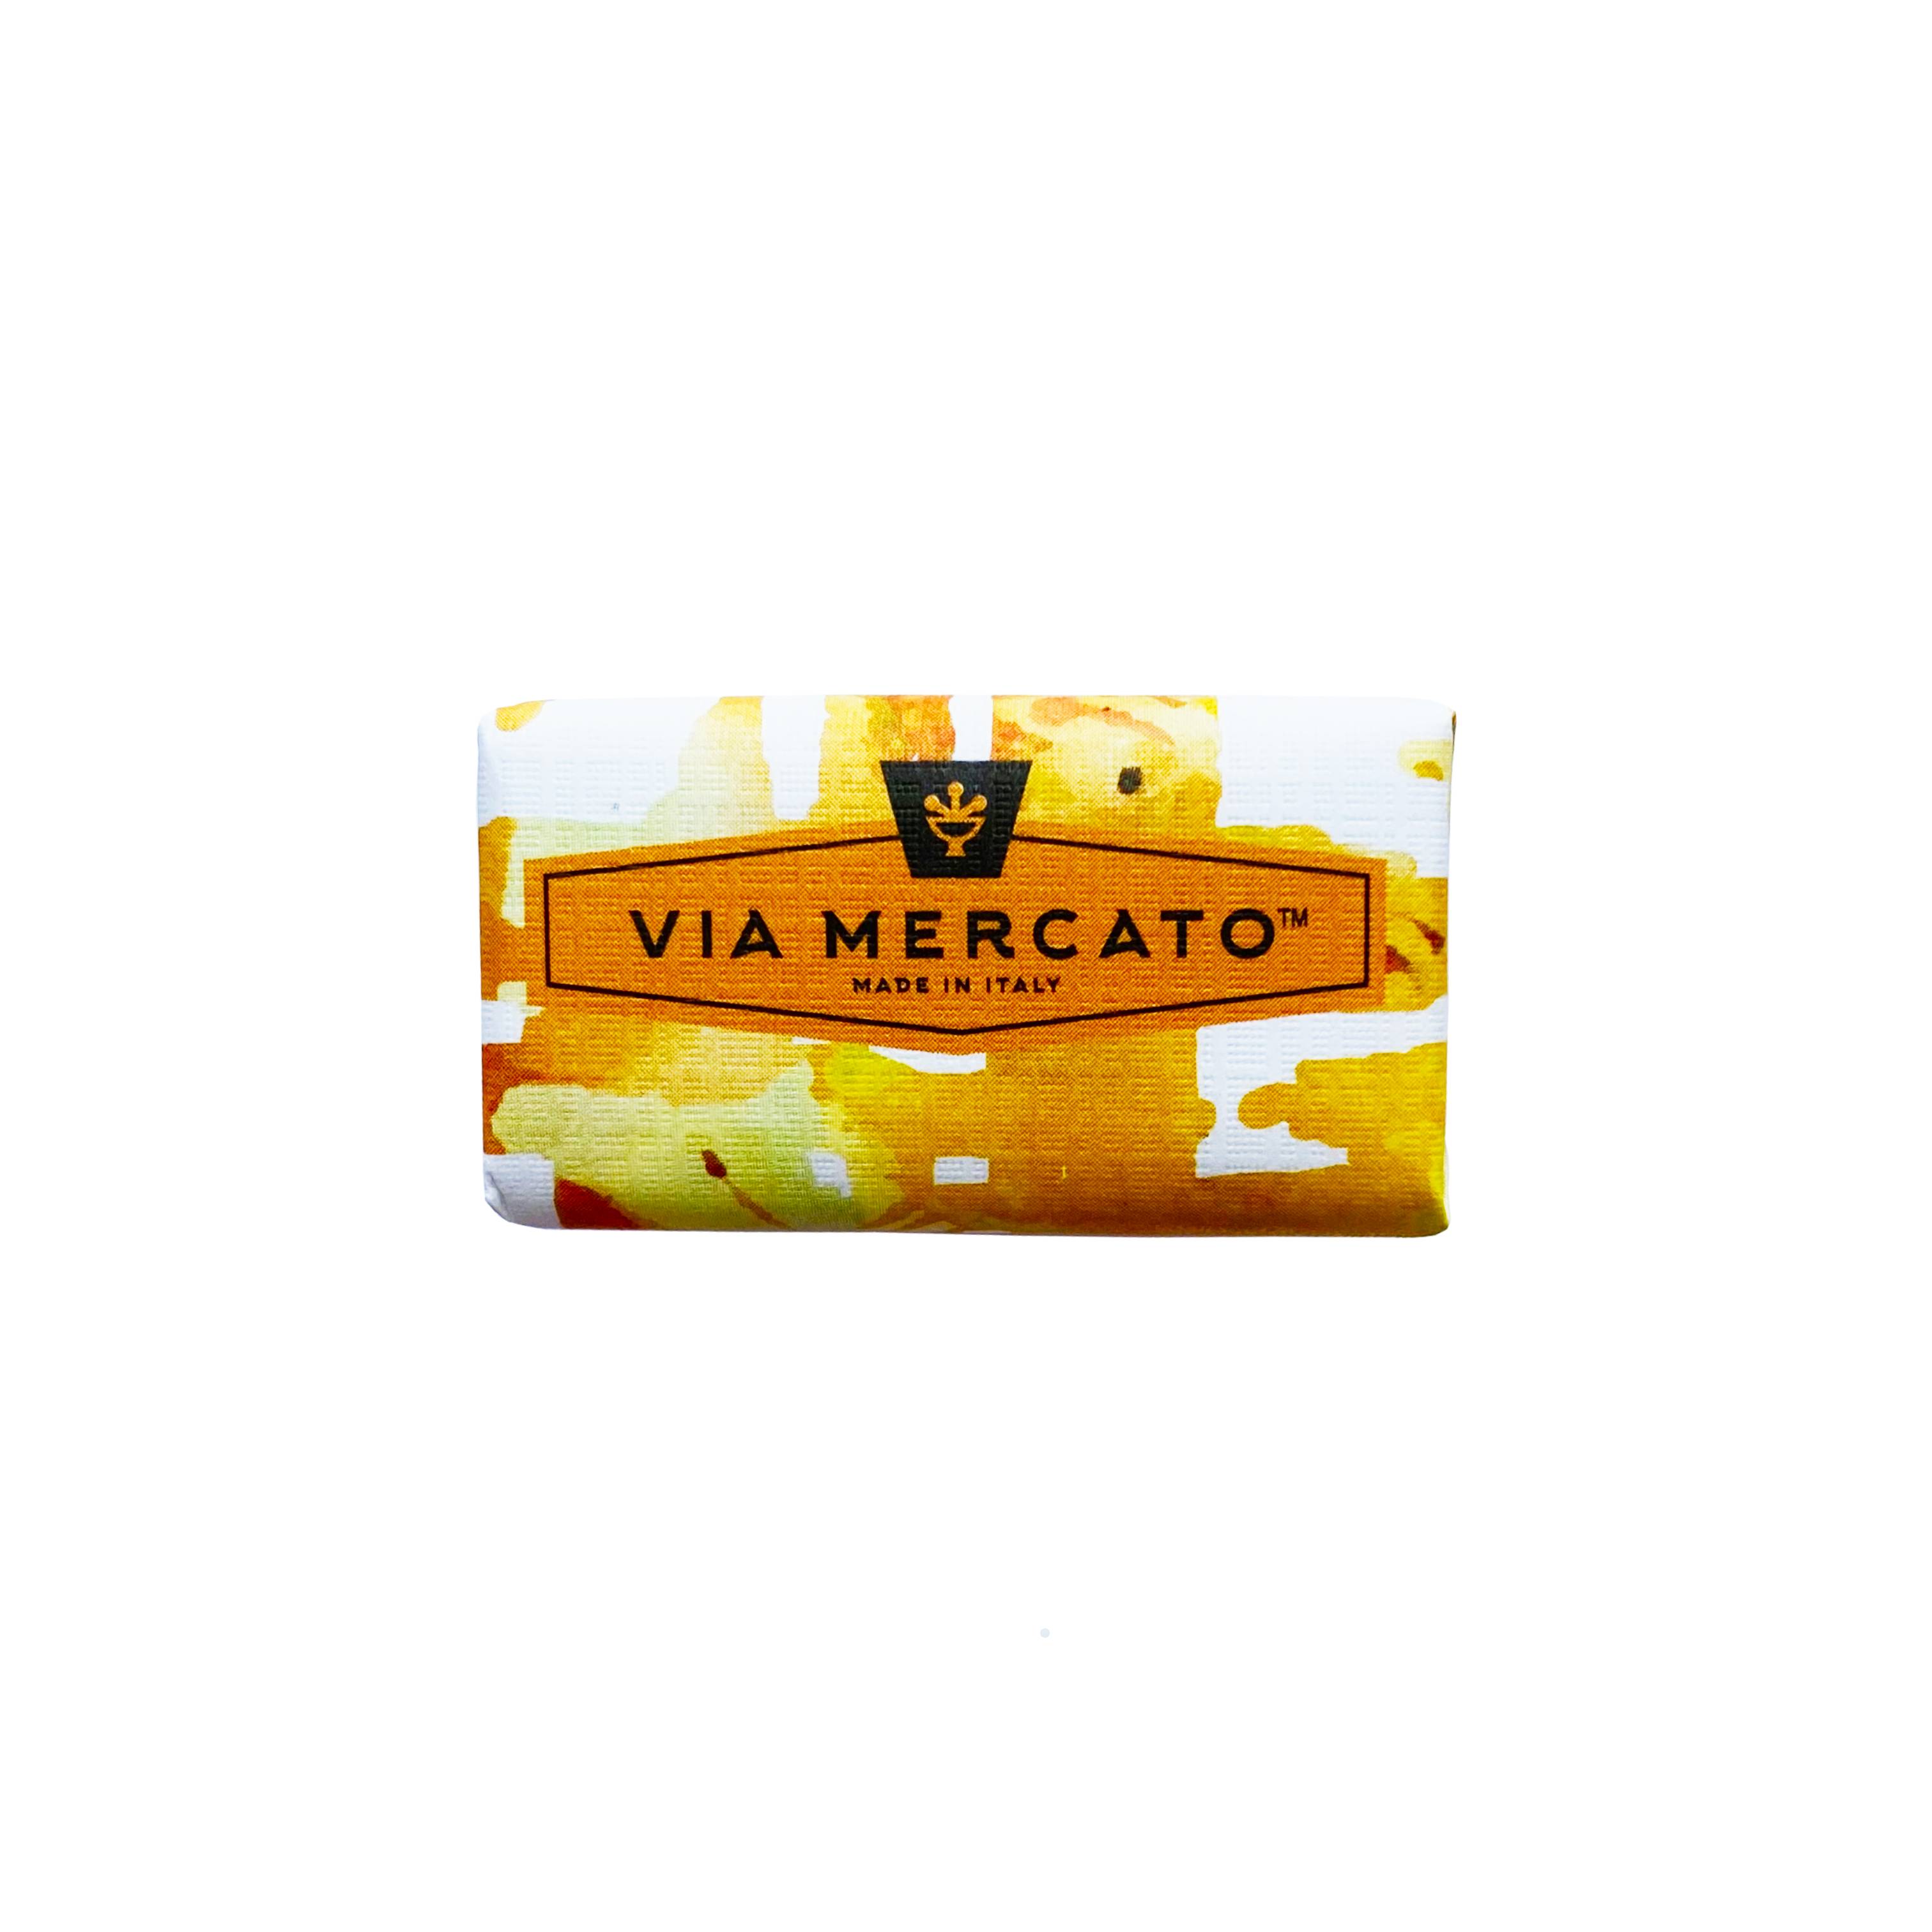 Мыло Via Mercato No. 6 — инжир, апельсиновый цвет и кедр